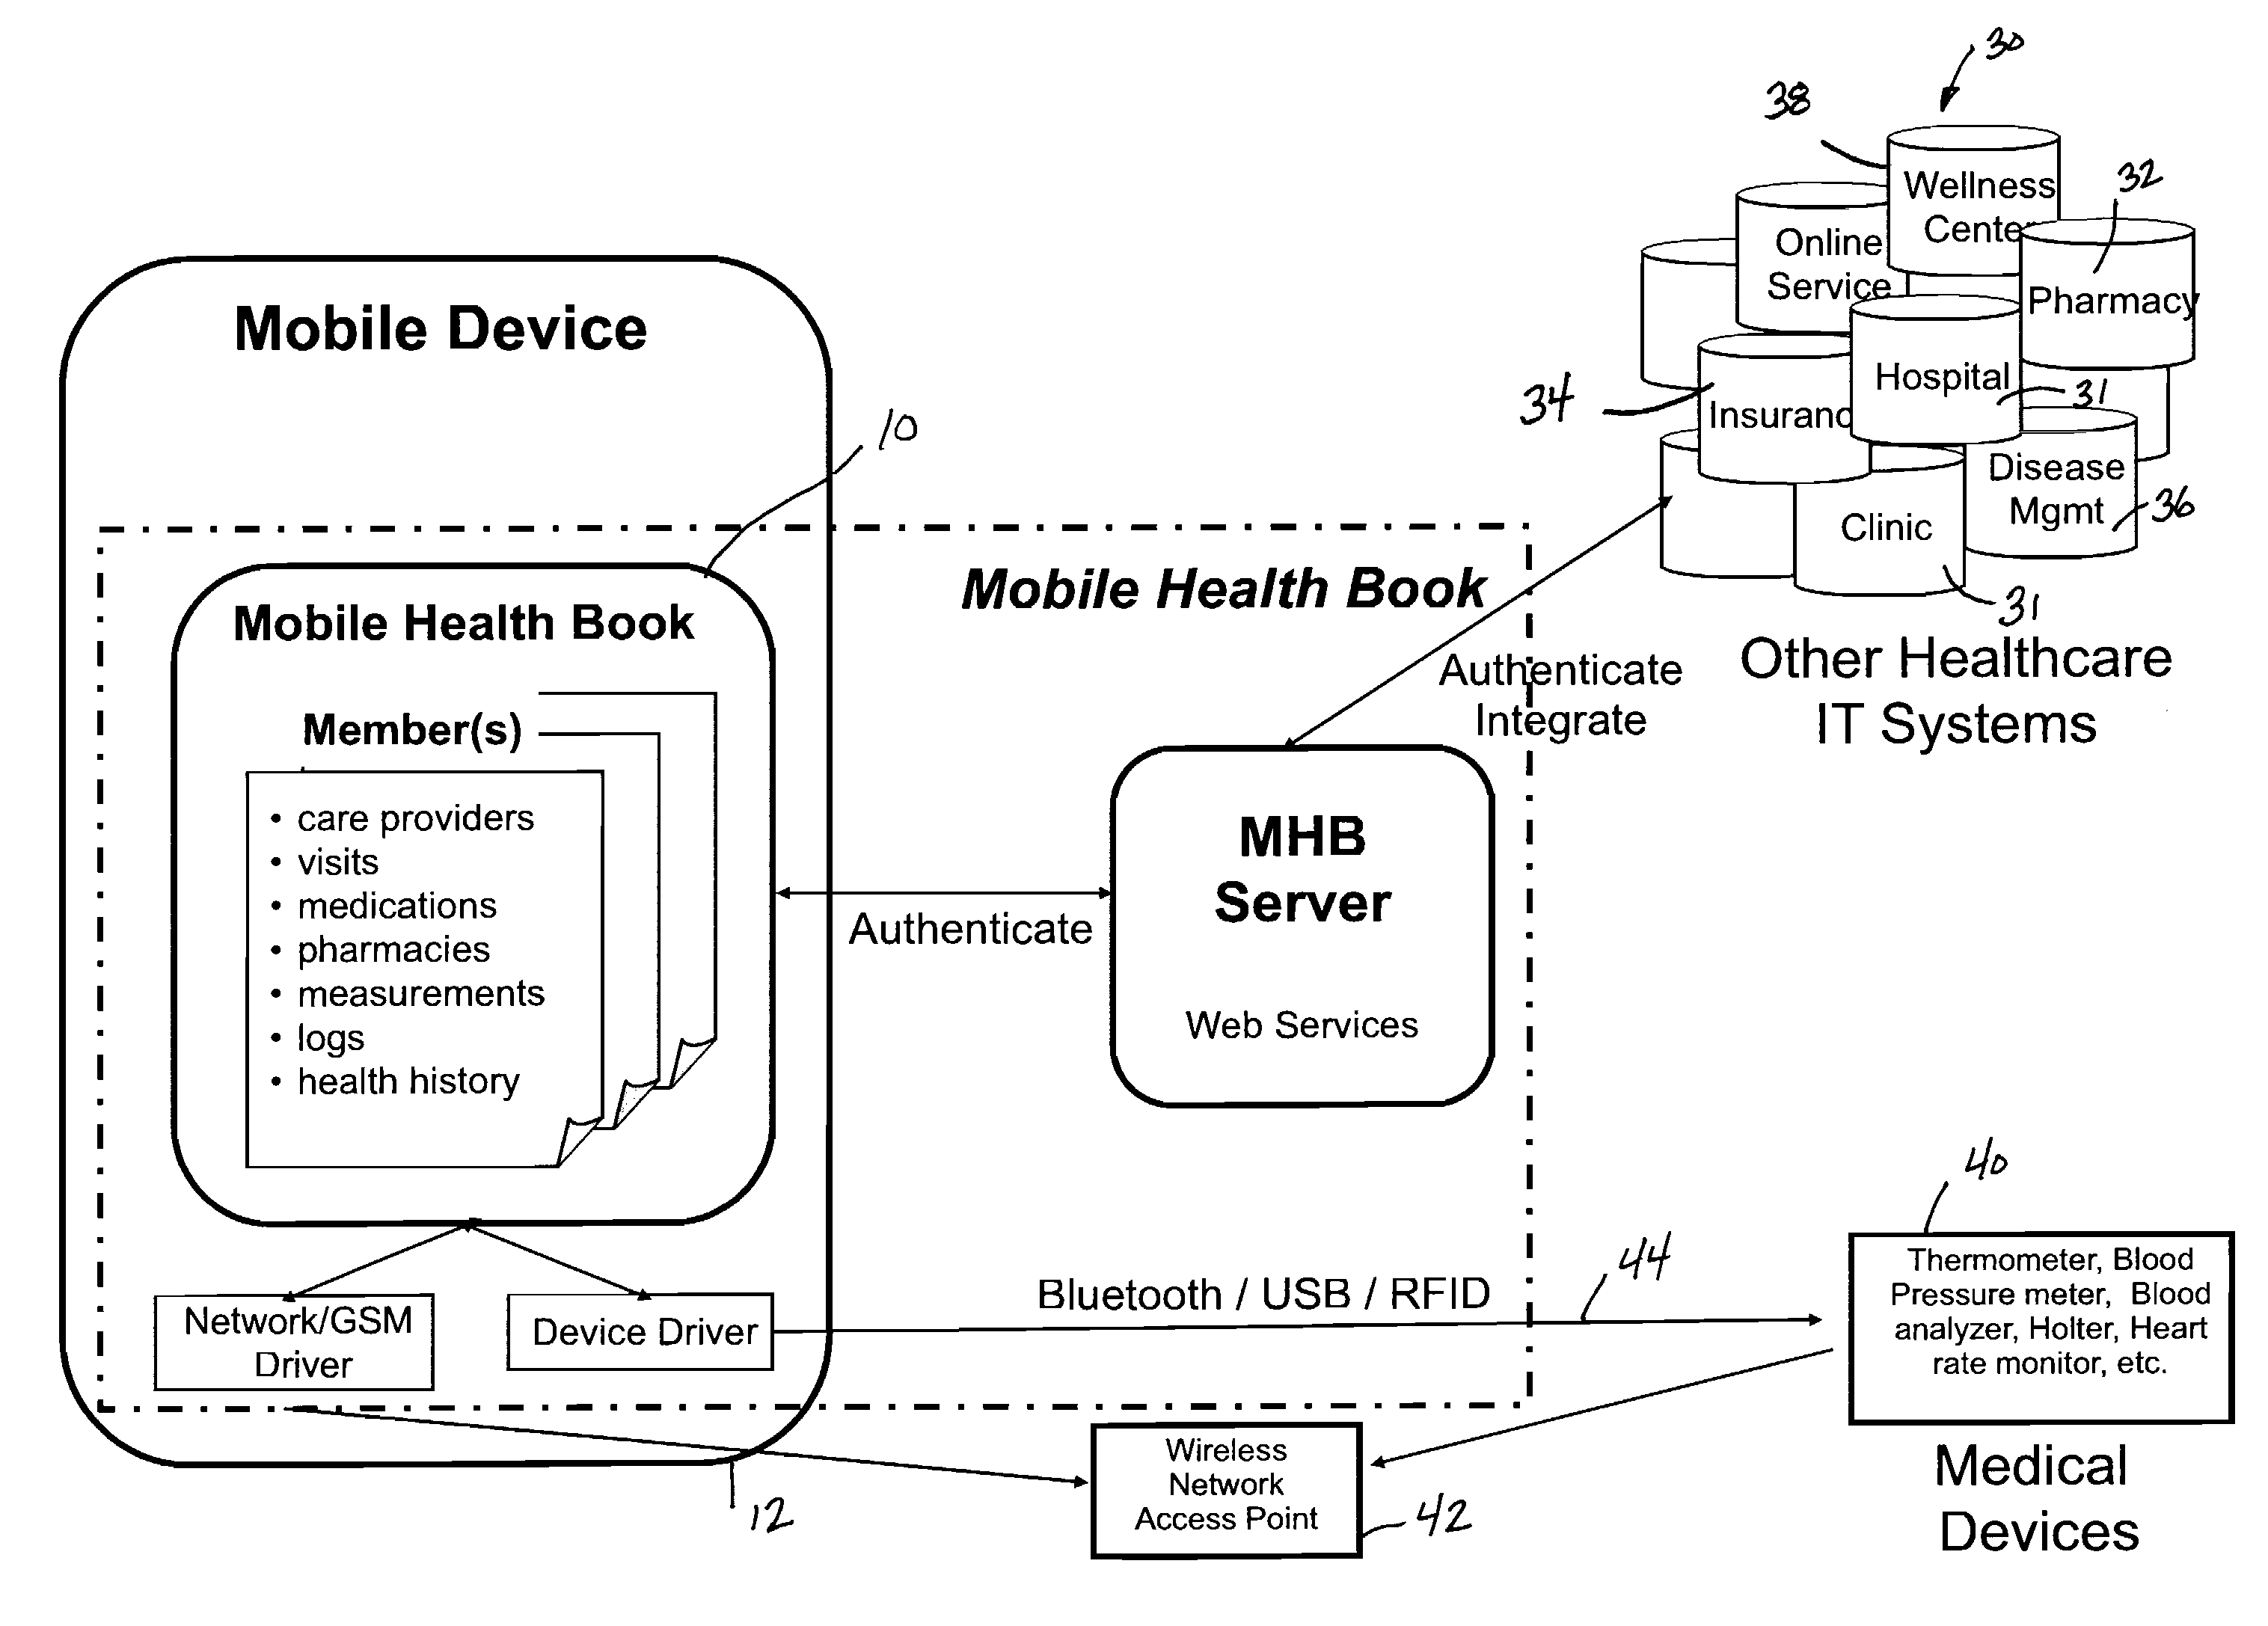 Mobile health book